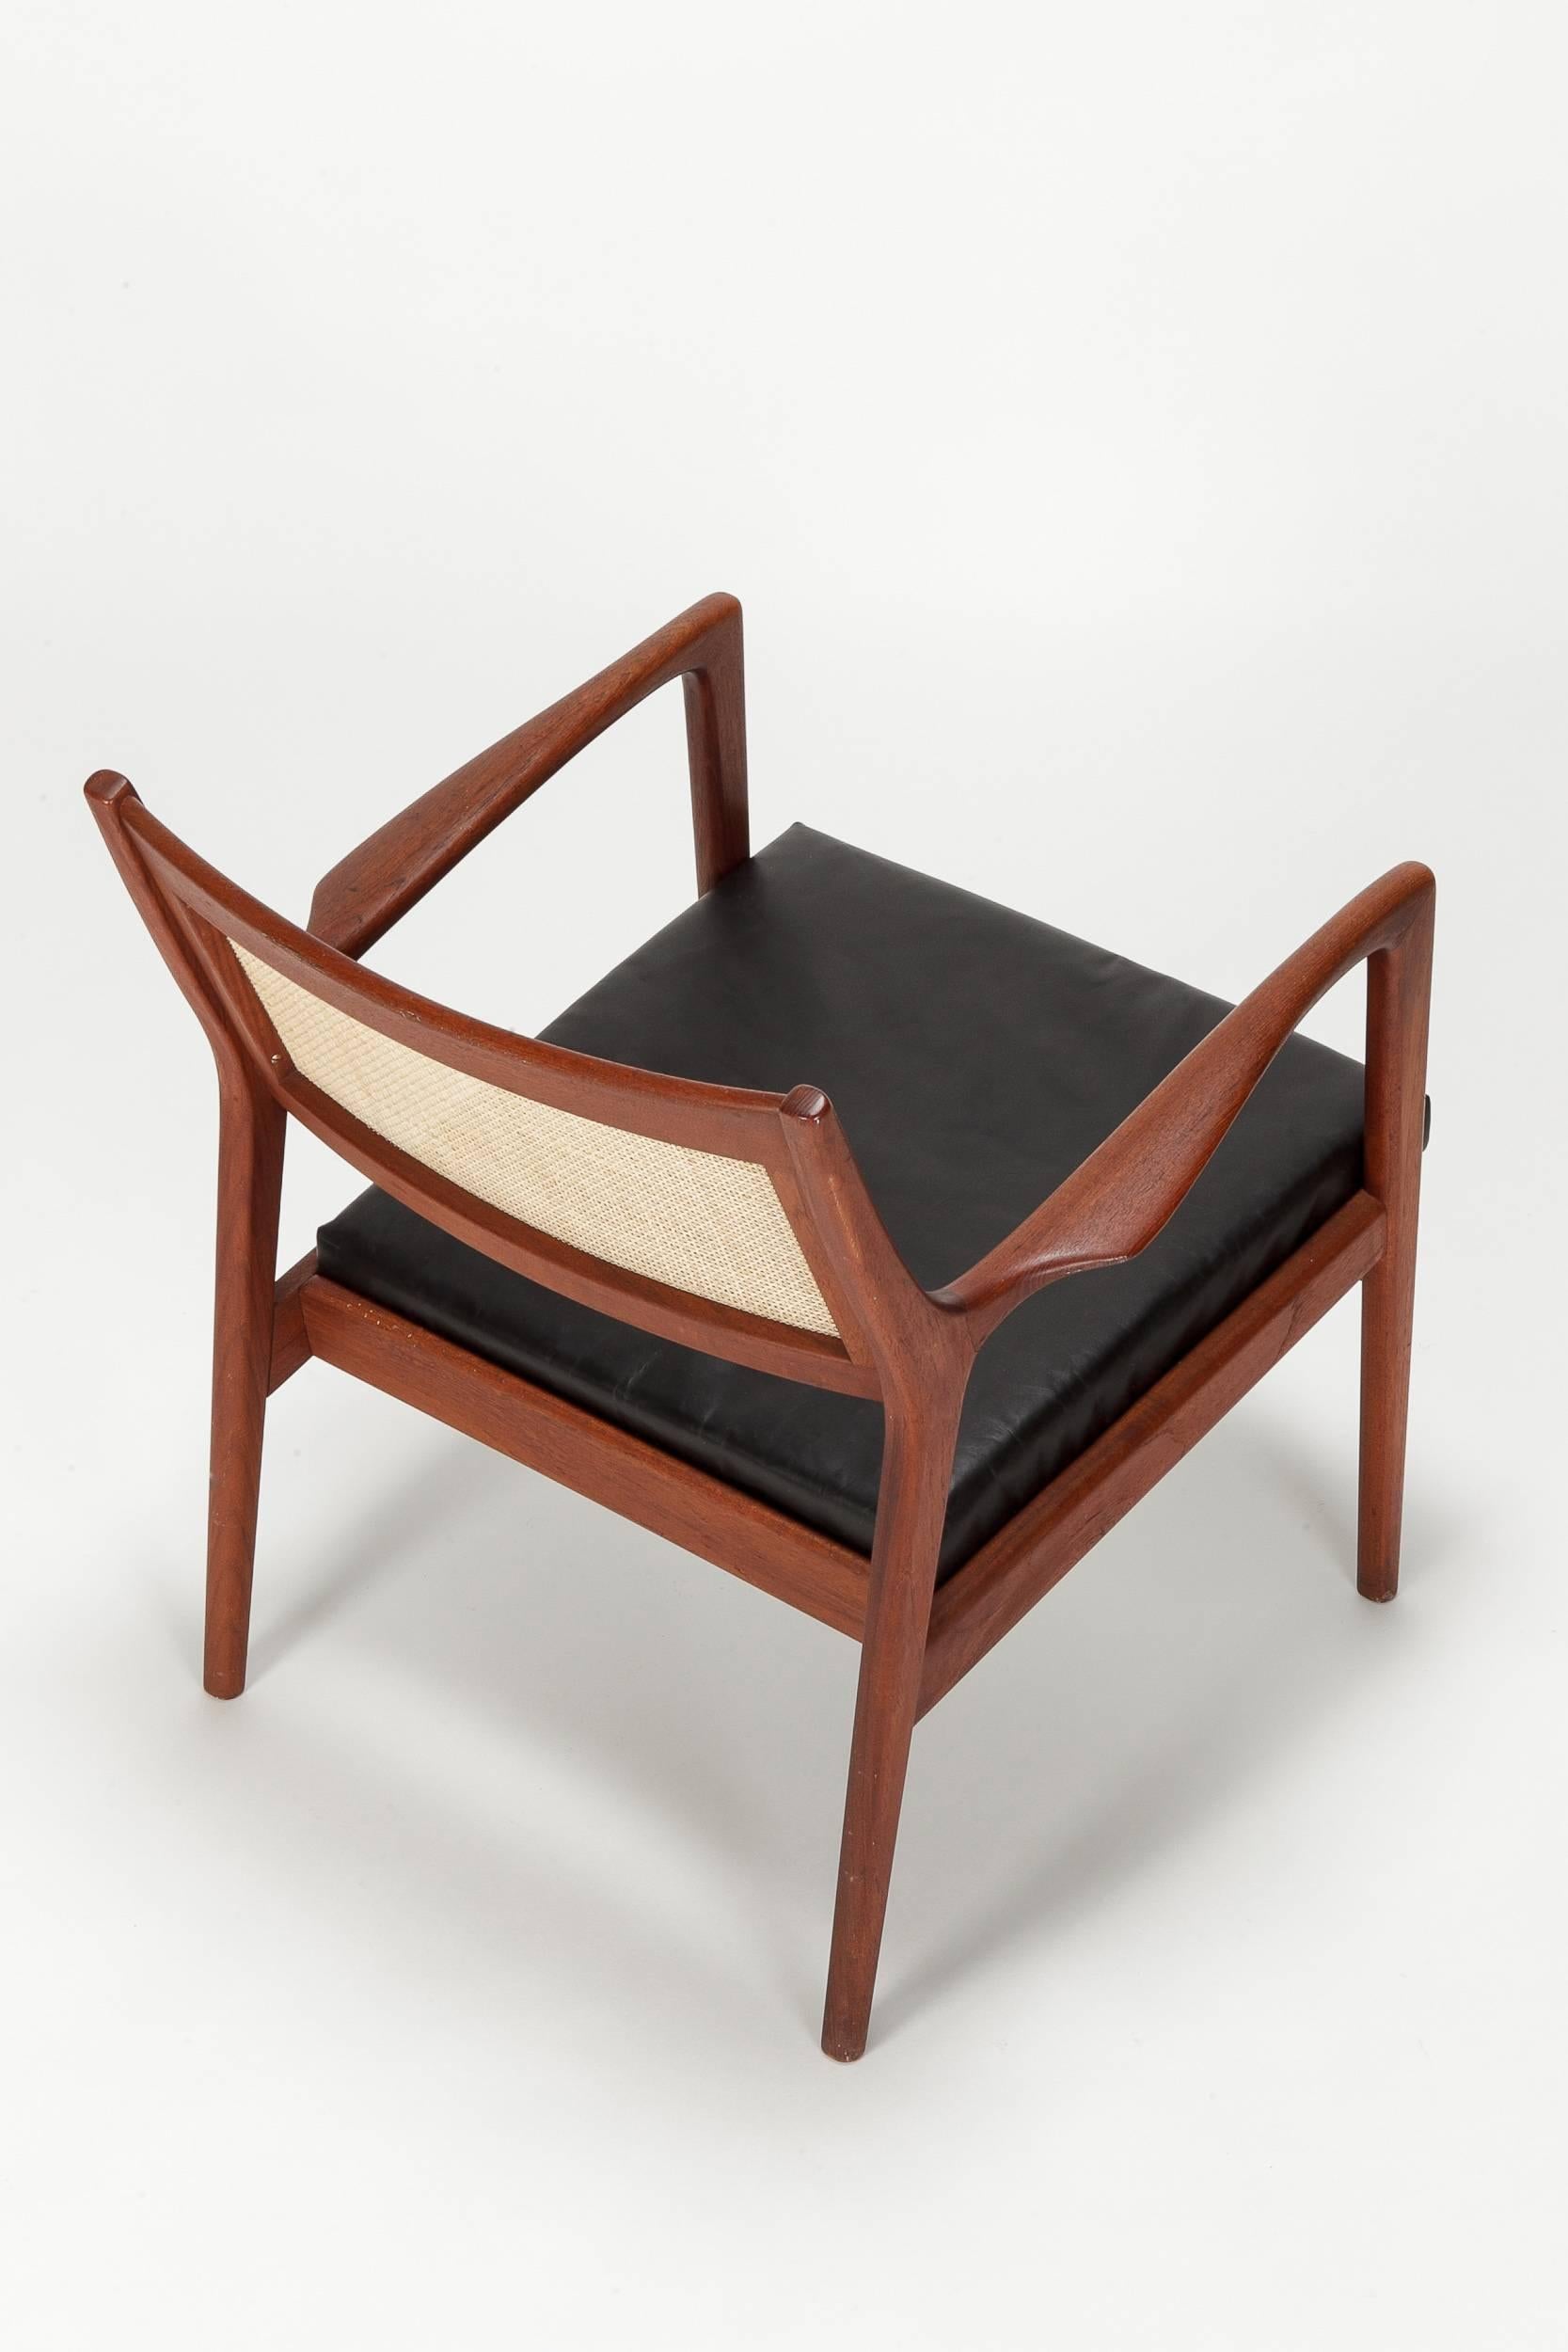 Oiled Swedish Lounge Chair by Karl Erik Ekselius, 1950s